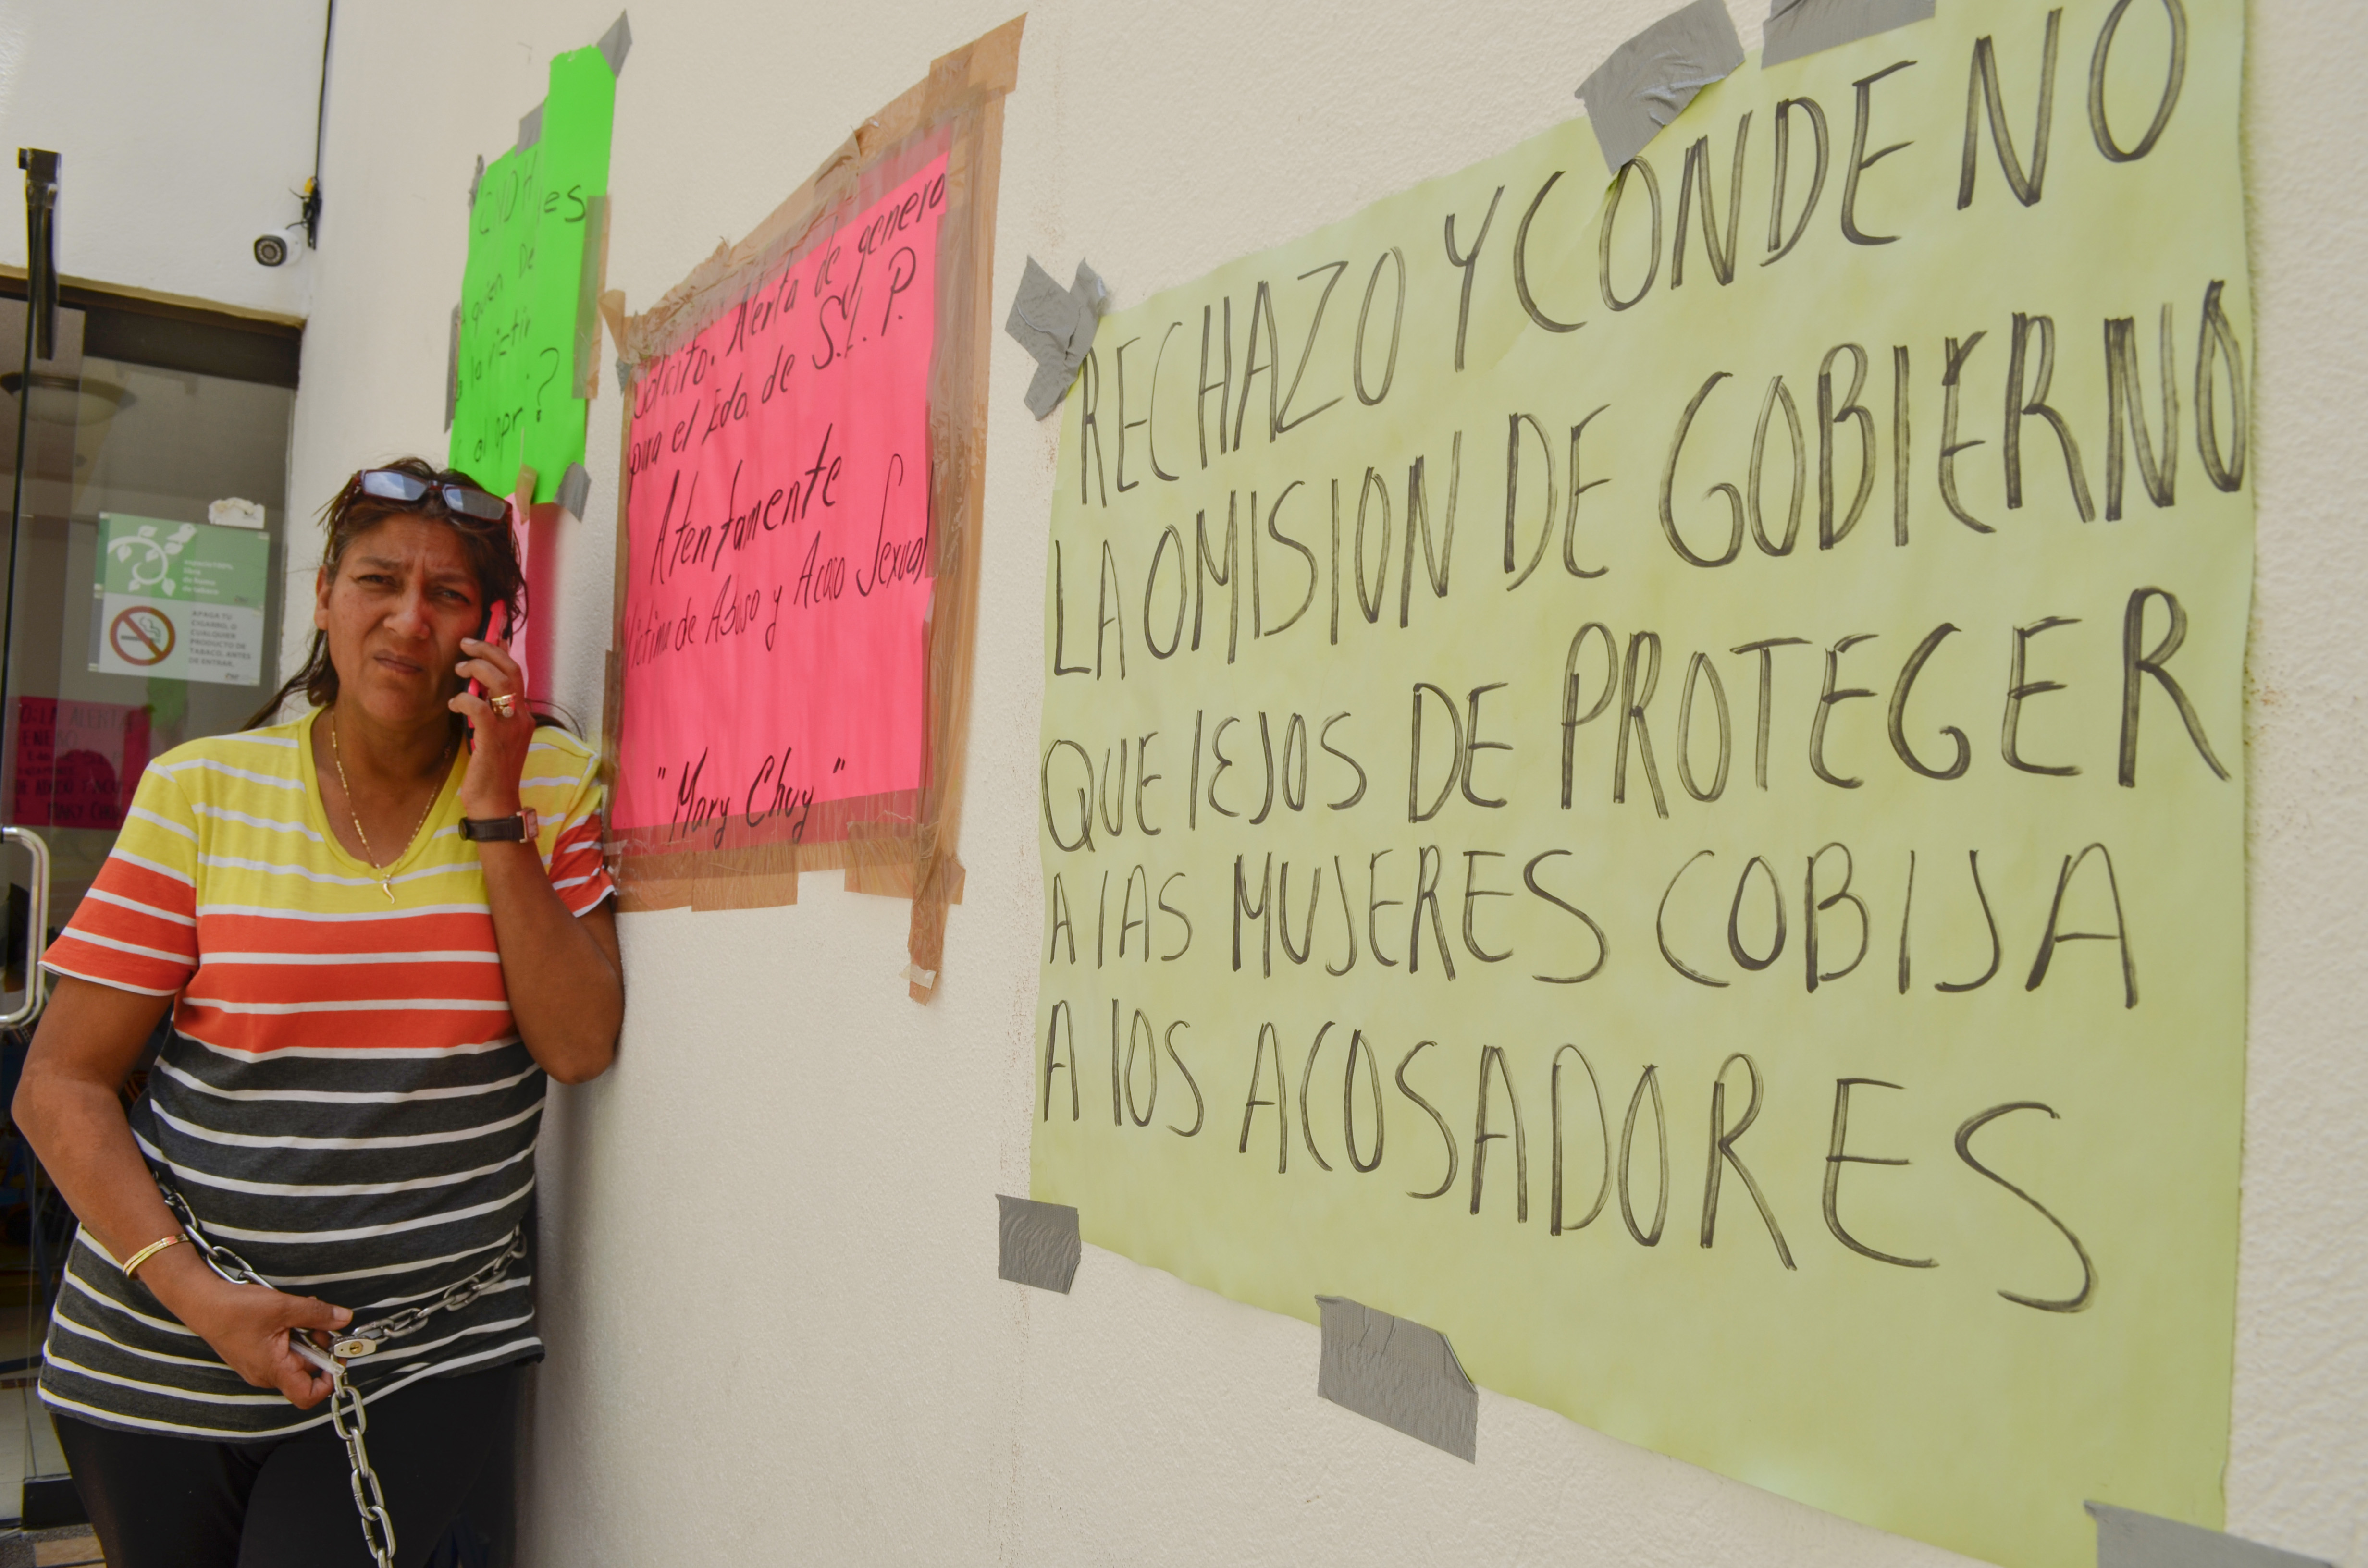  Planta Torres Sánchez a funcionarios de CNDH; lo consideran mal mensaje en atención a derechos humanos